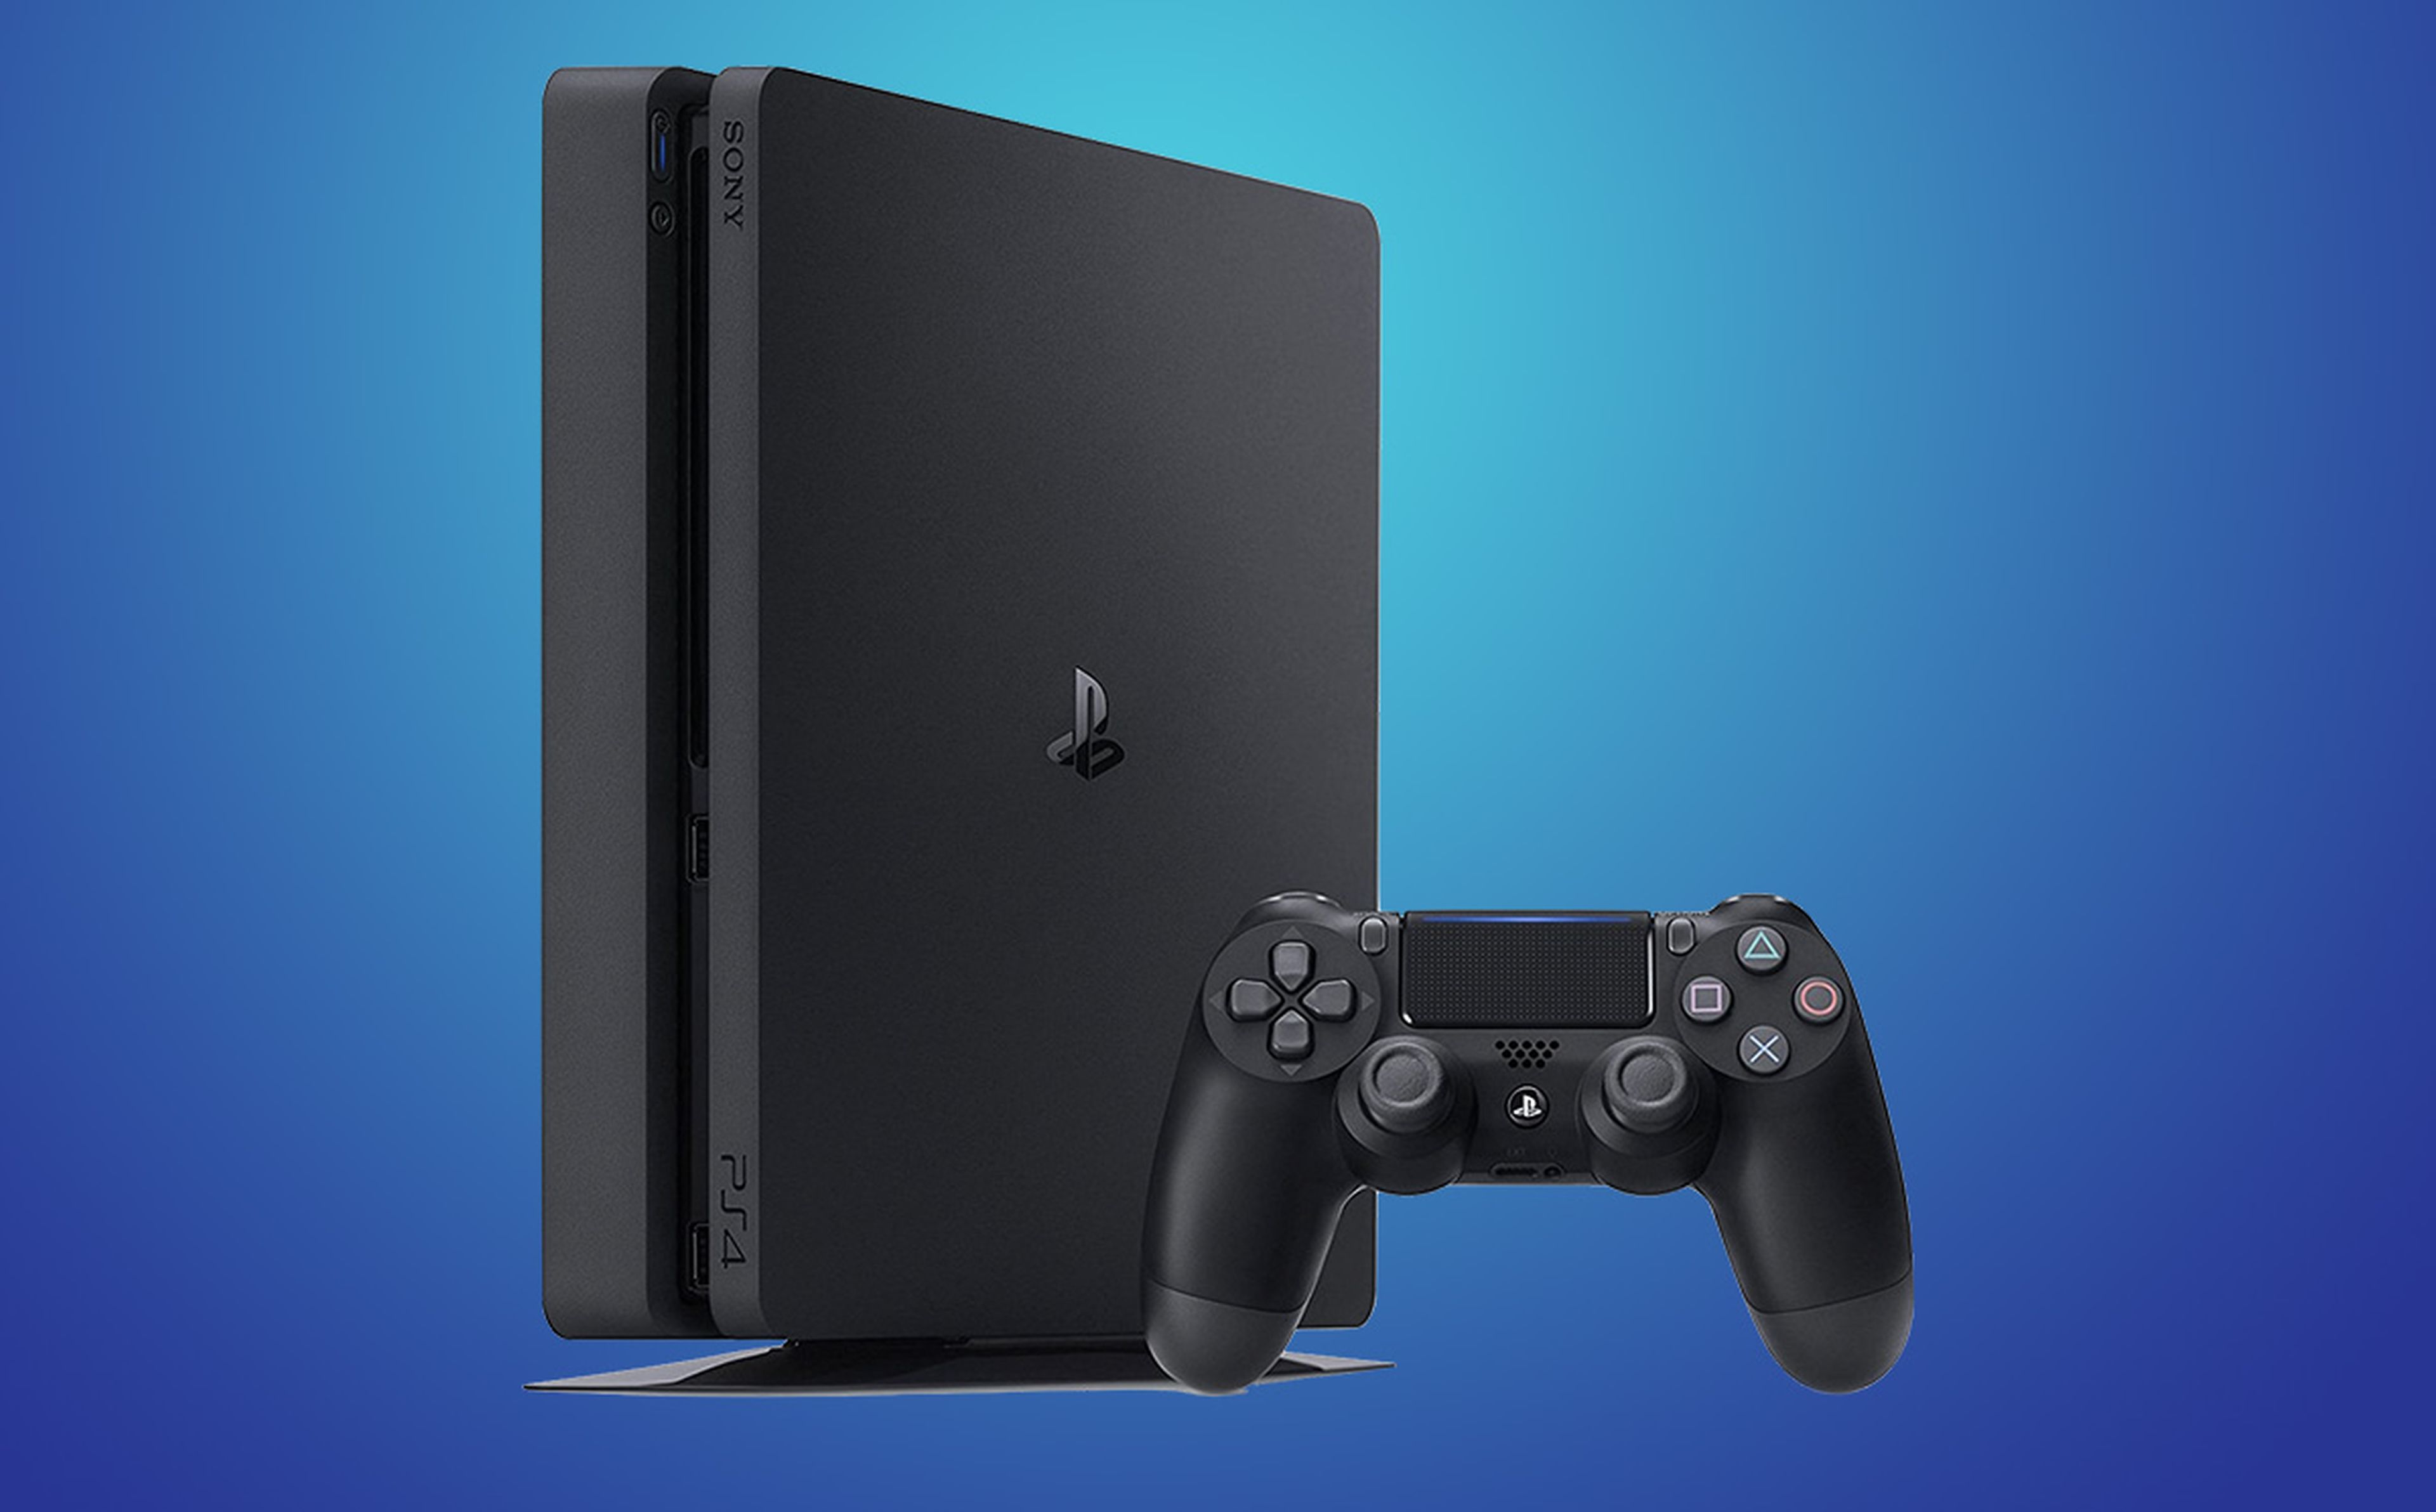 Ofertón otra vez! PlayStation 4 vuelve estar a 199€ con disco duro de 500GB  y código de Fortnite